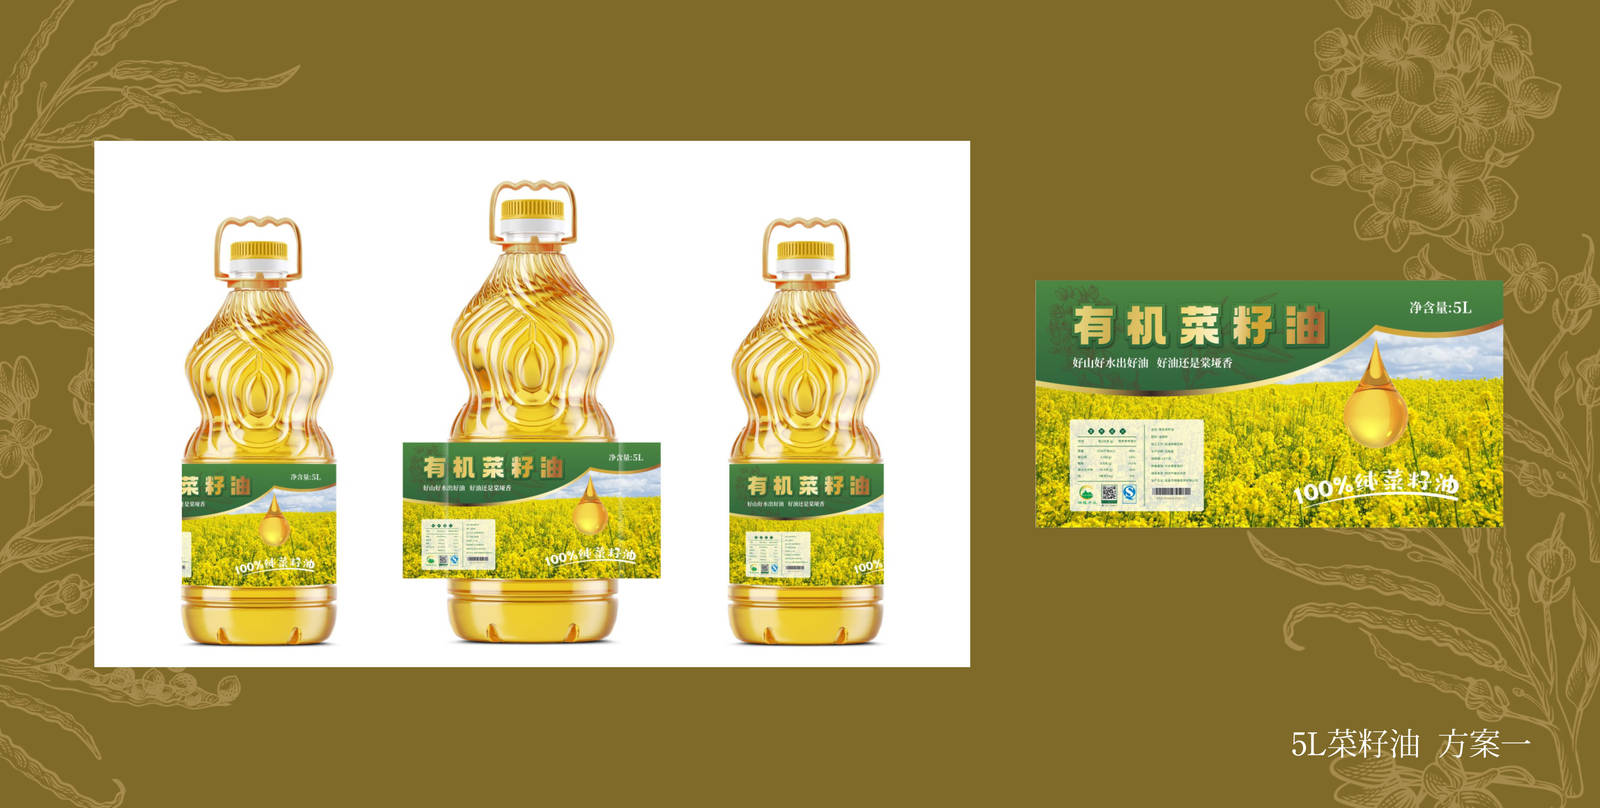 绿耀有机菜籽油形象系列瓶子包装设计-第5张